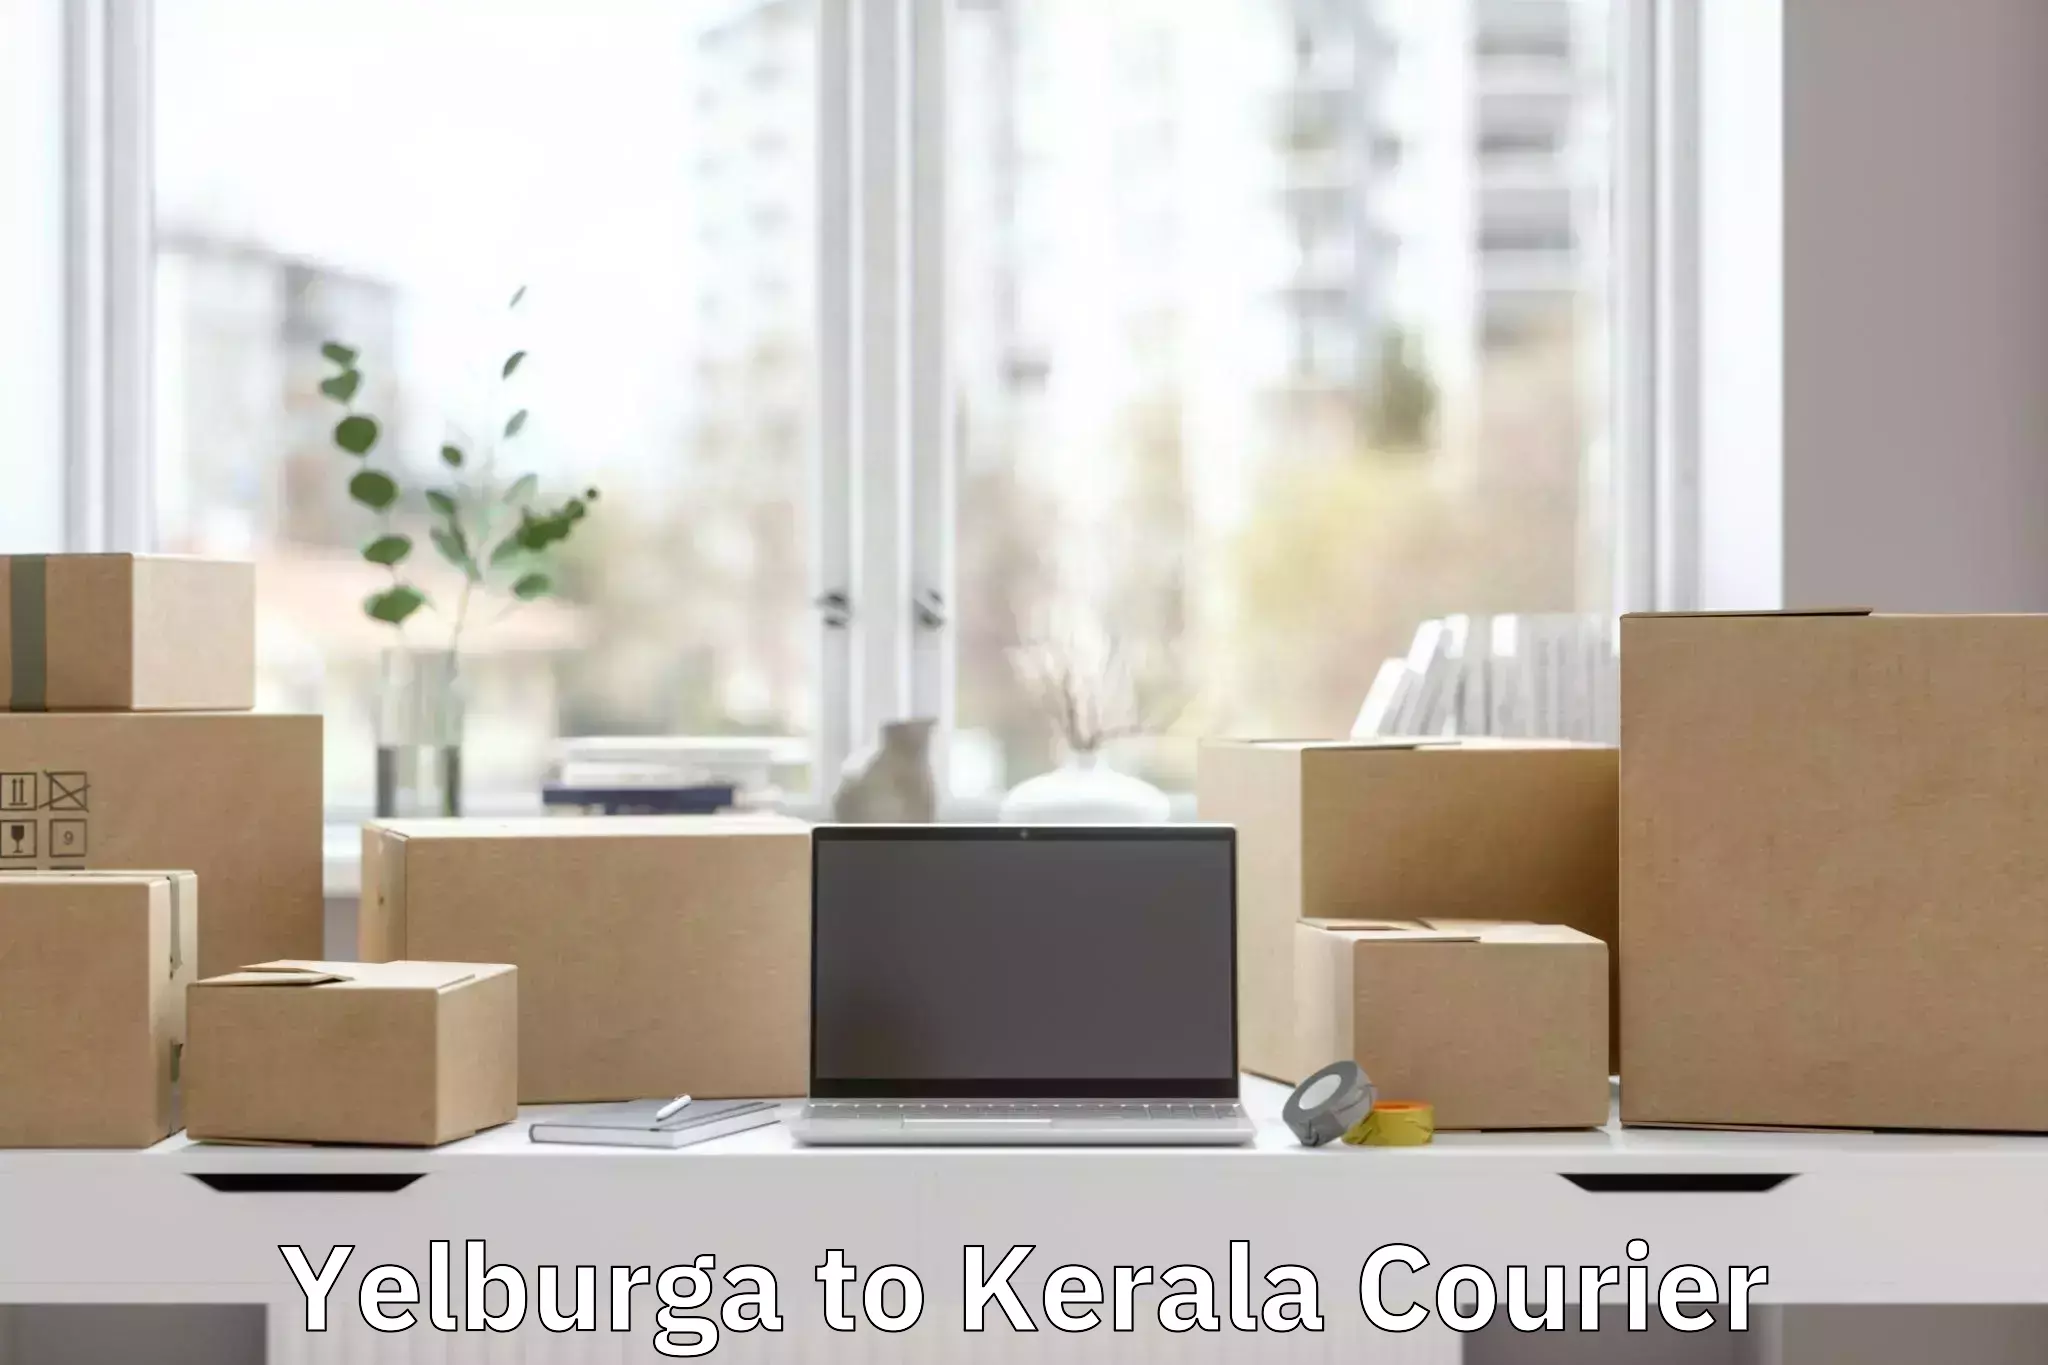 Baggage transport services Yelburga to Kerala